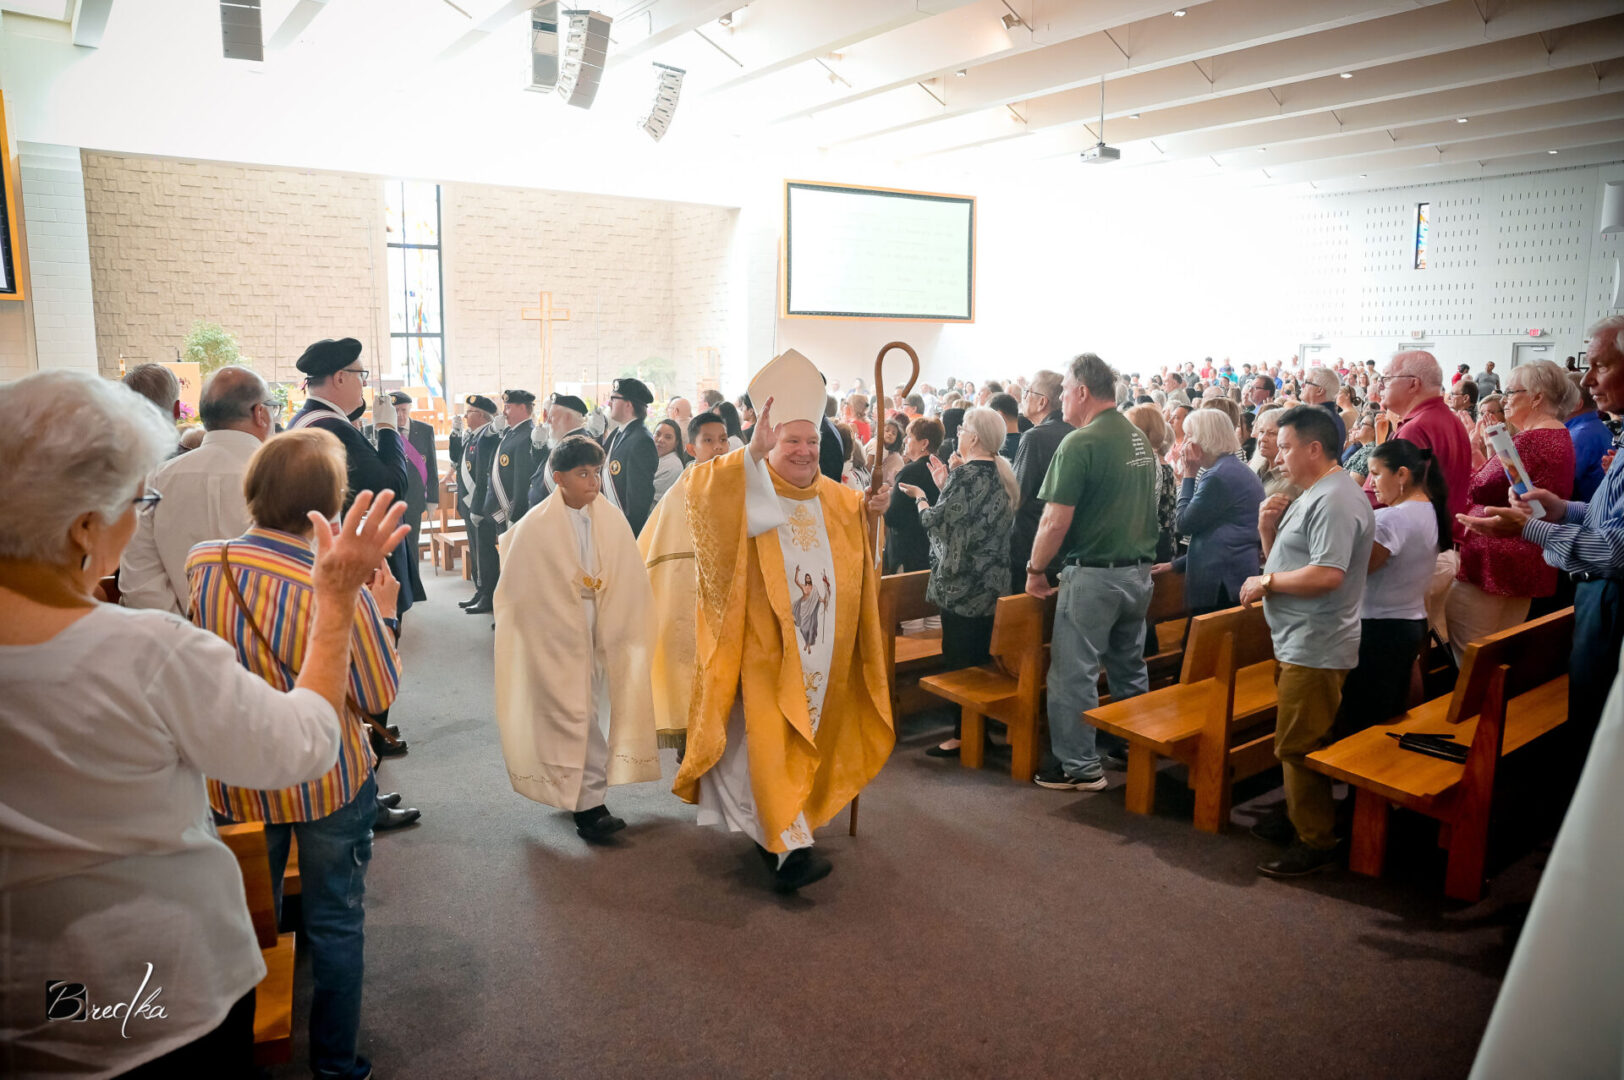 Bishop procession in a church.